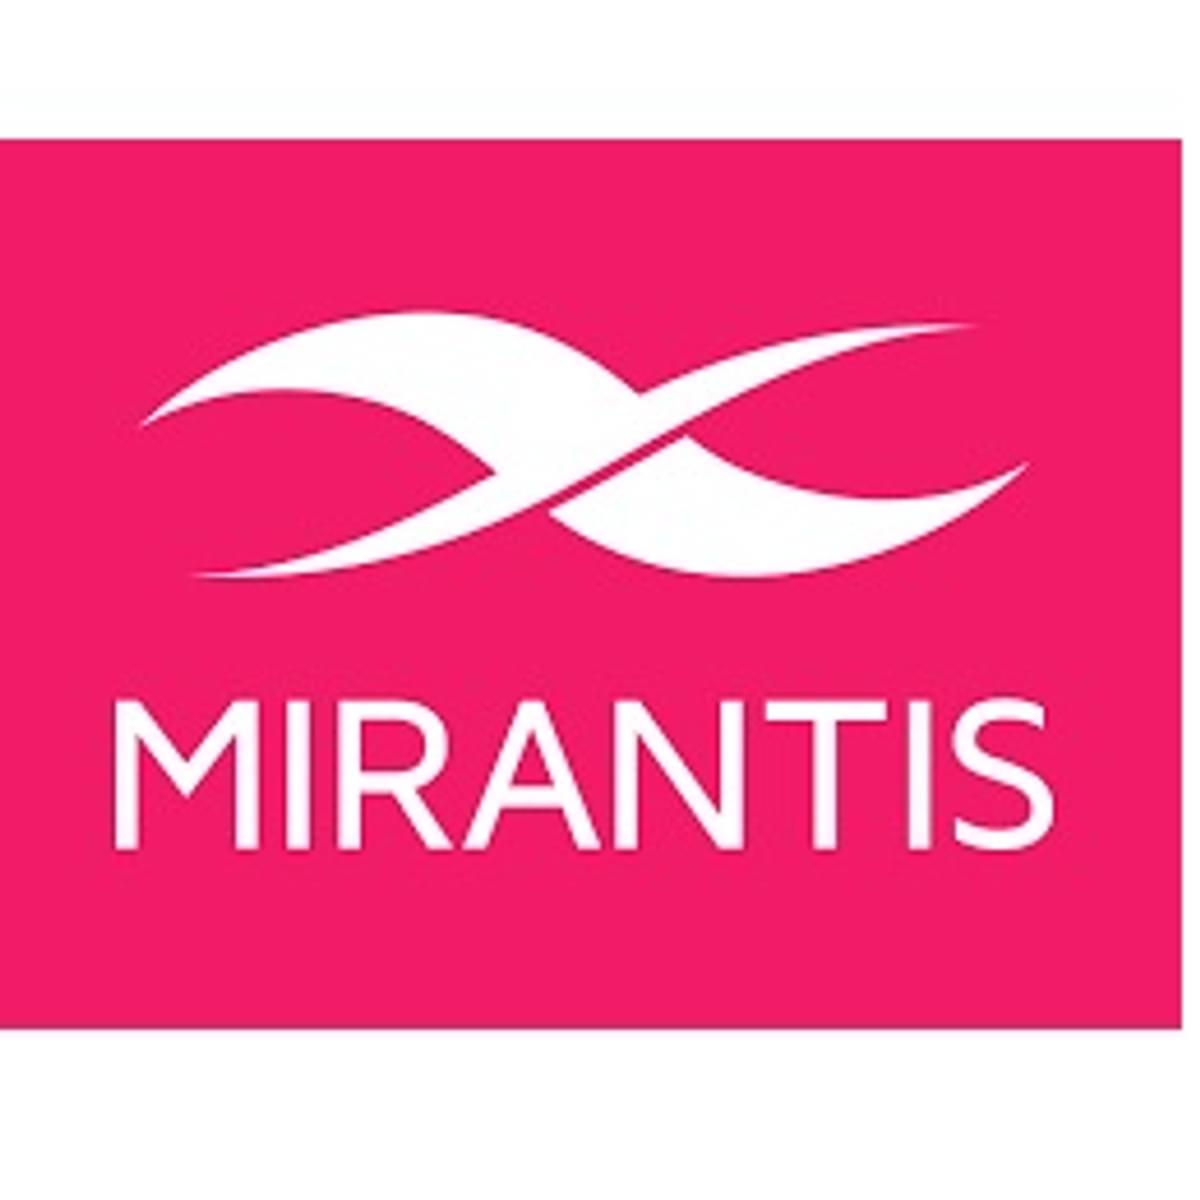 Mirantis neemt Docker Enterprise Platform Business over image